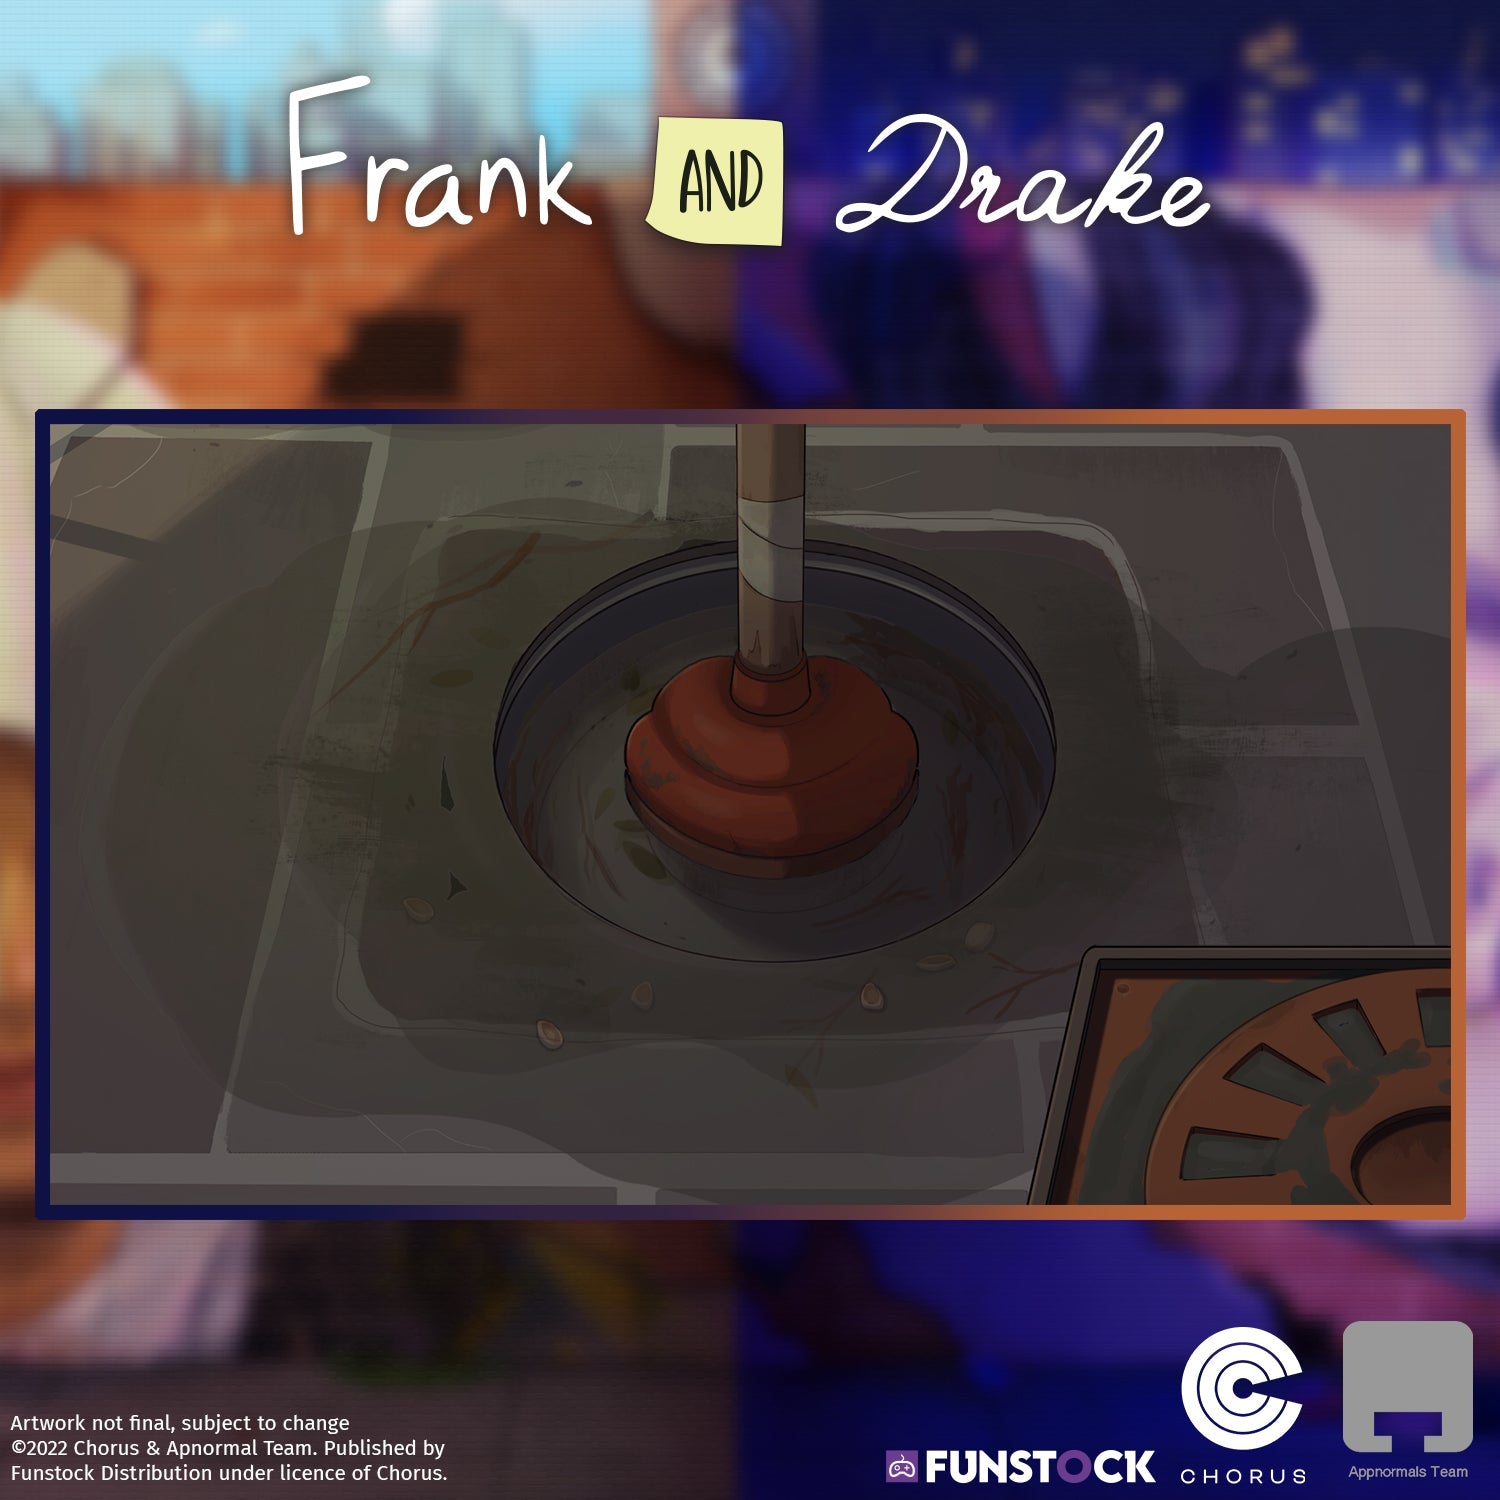 Frank and Drake (PlayStation 4)